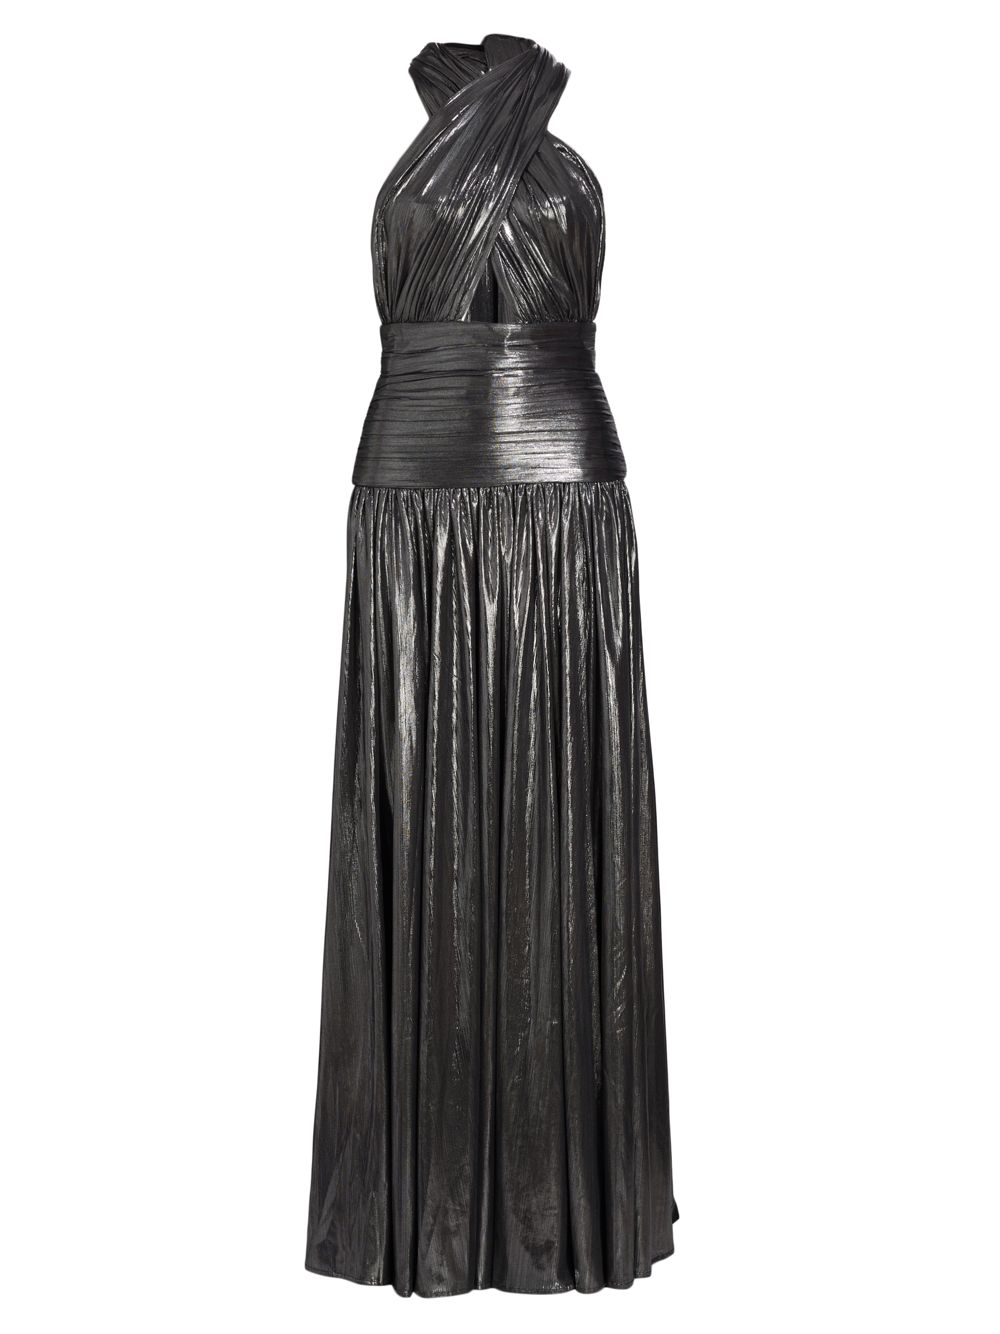 Платье Florence с эффектом металлик и вырезом халтер Bronx and Banco